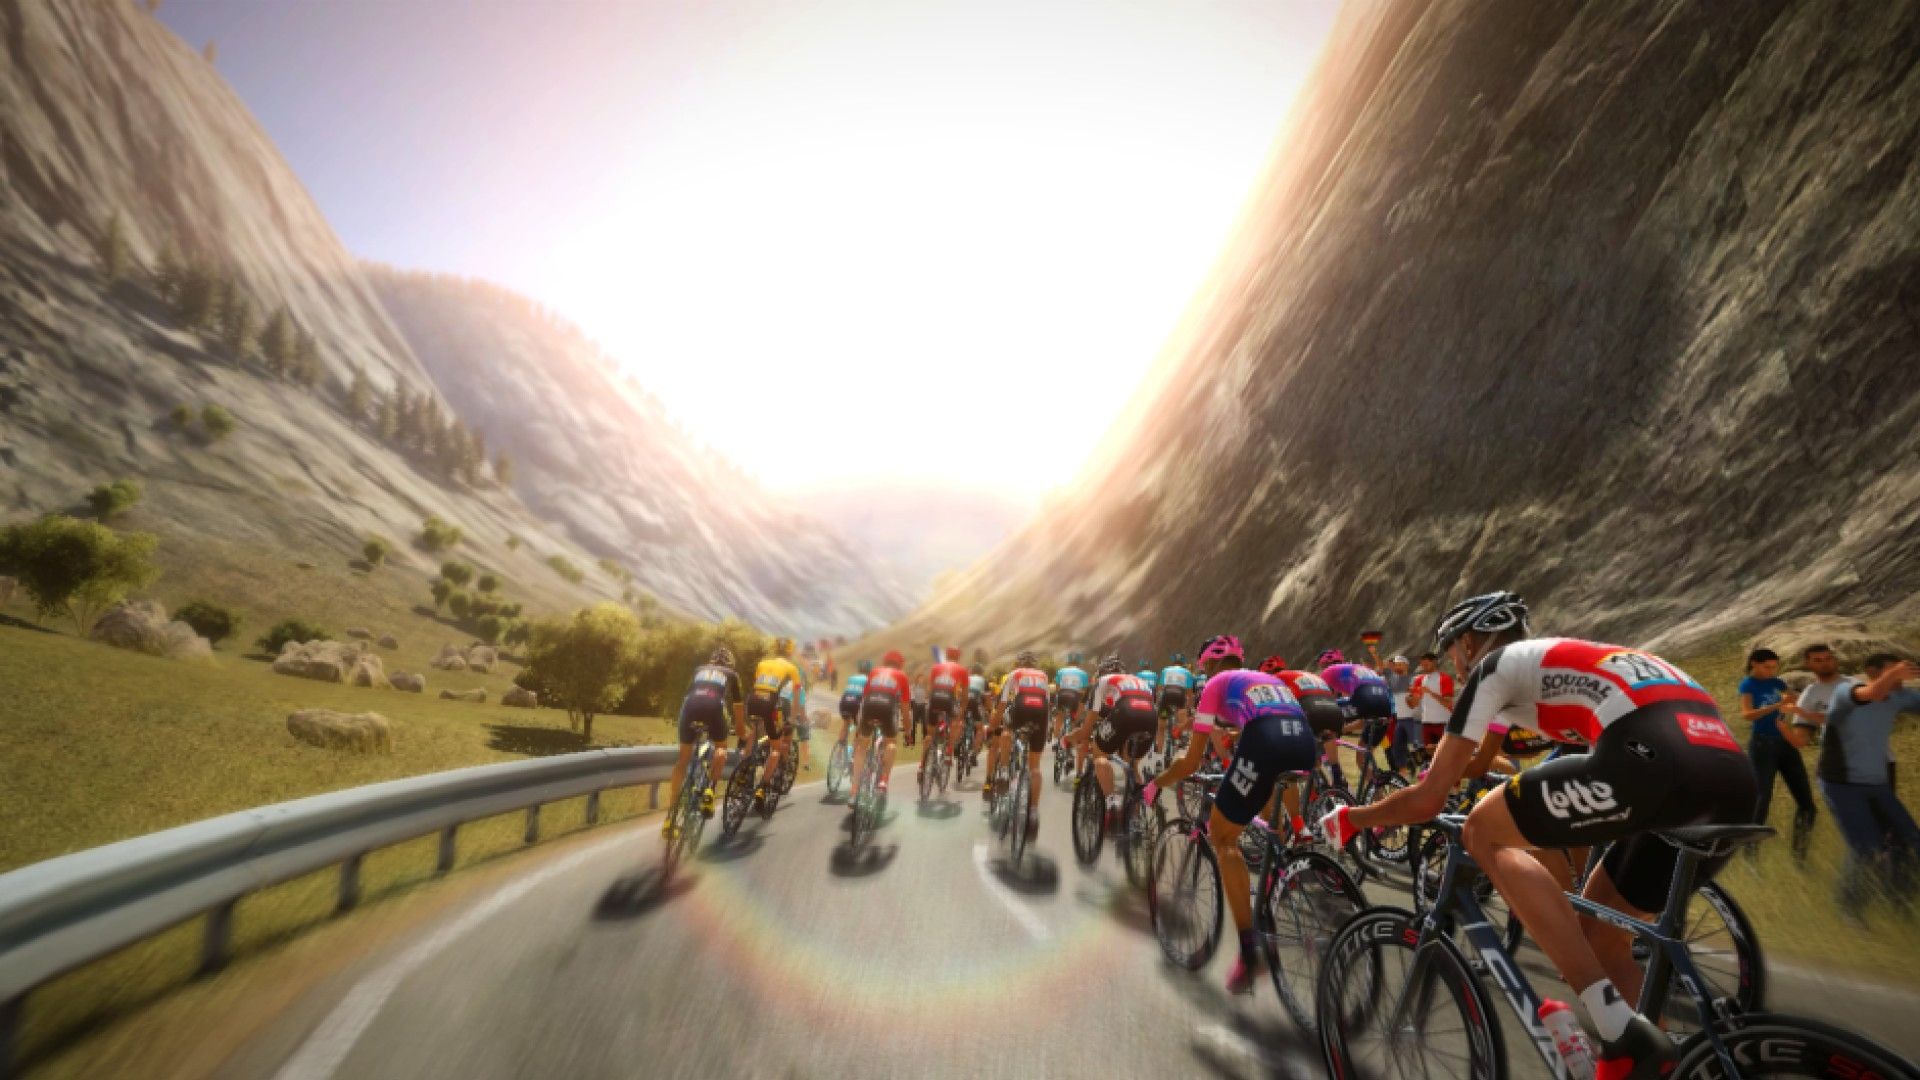 Experience Le Tour de France From Inside the Peloton with Tour de France 2020